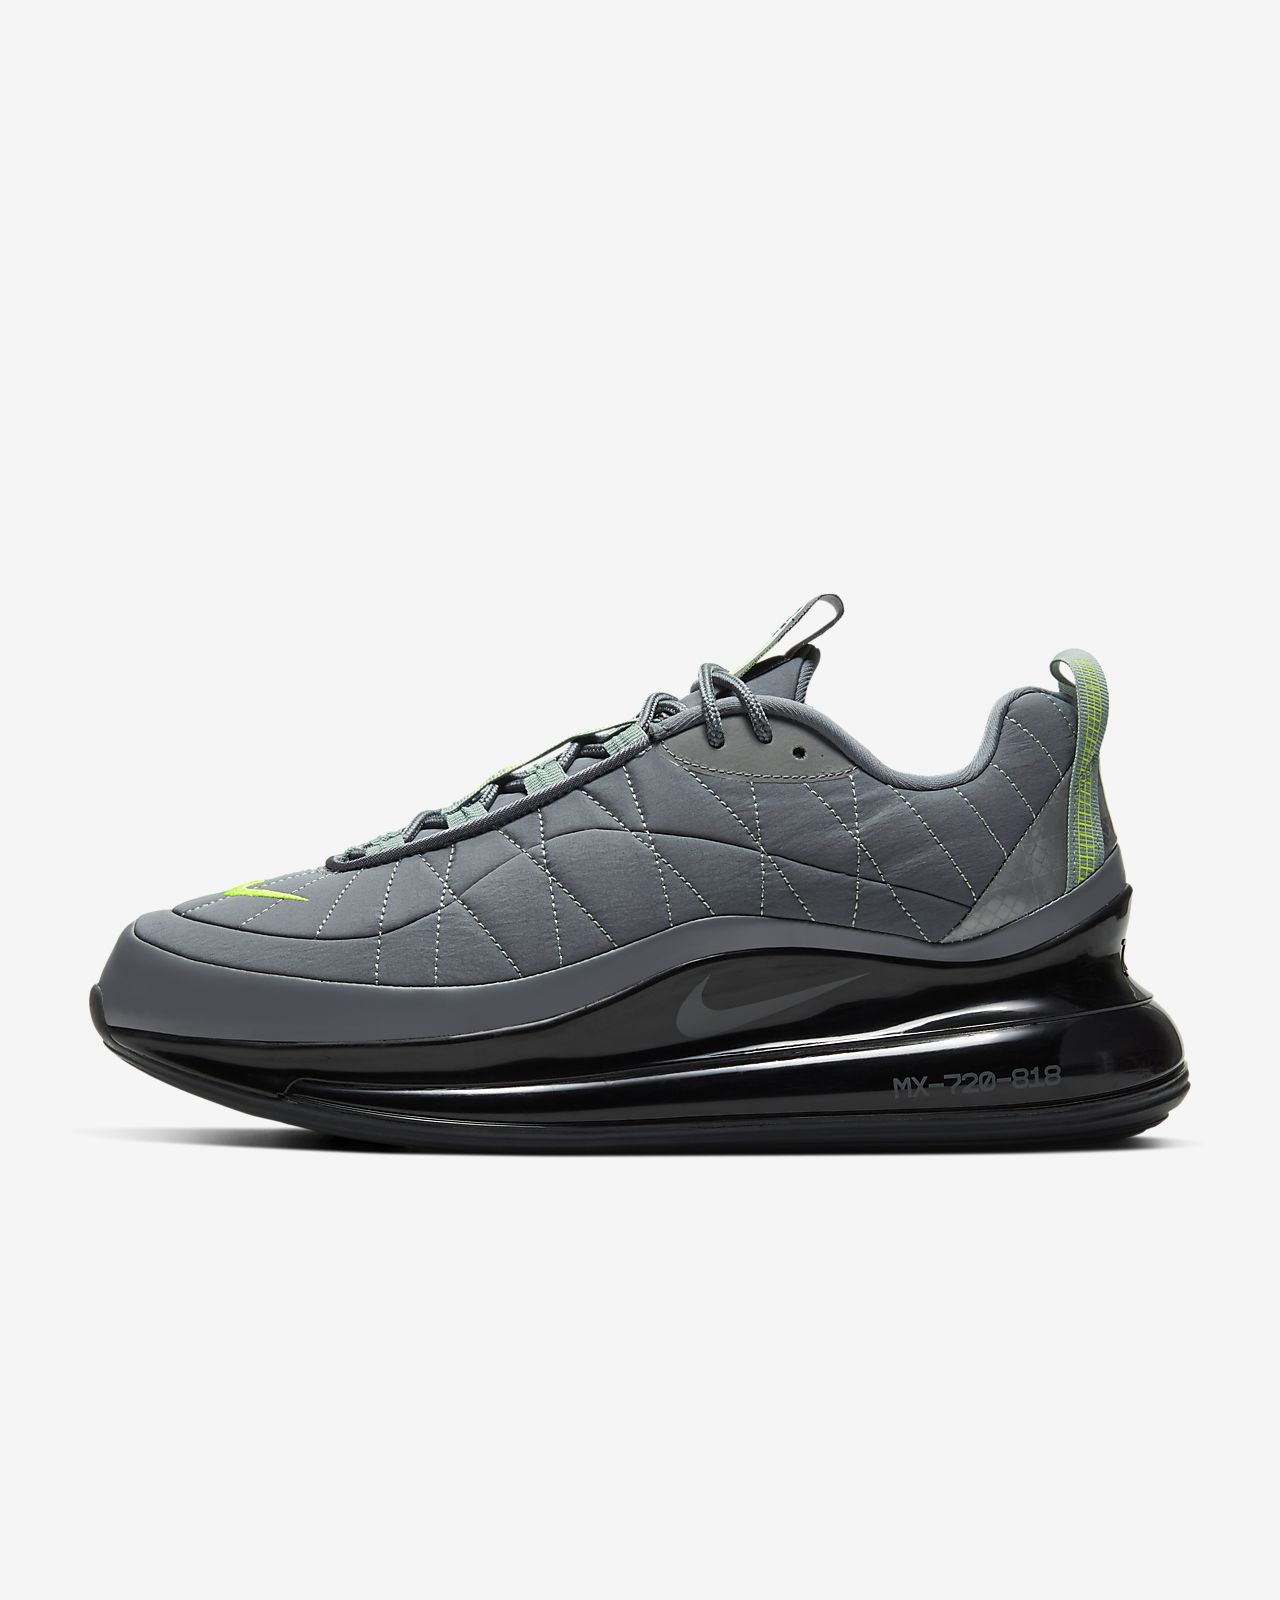 Nike MX-720-818 Men's Shoe. Nike HU